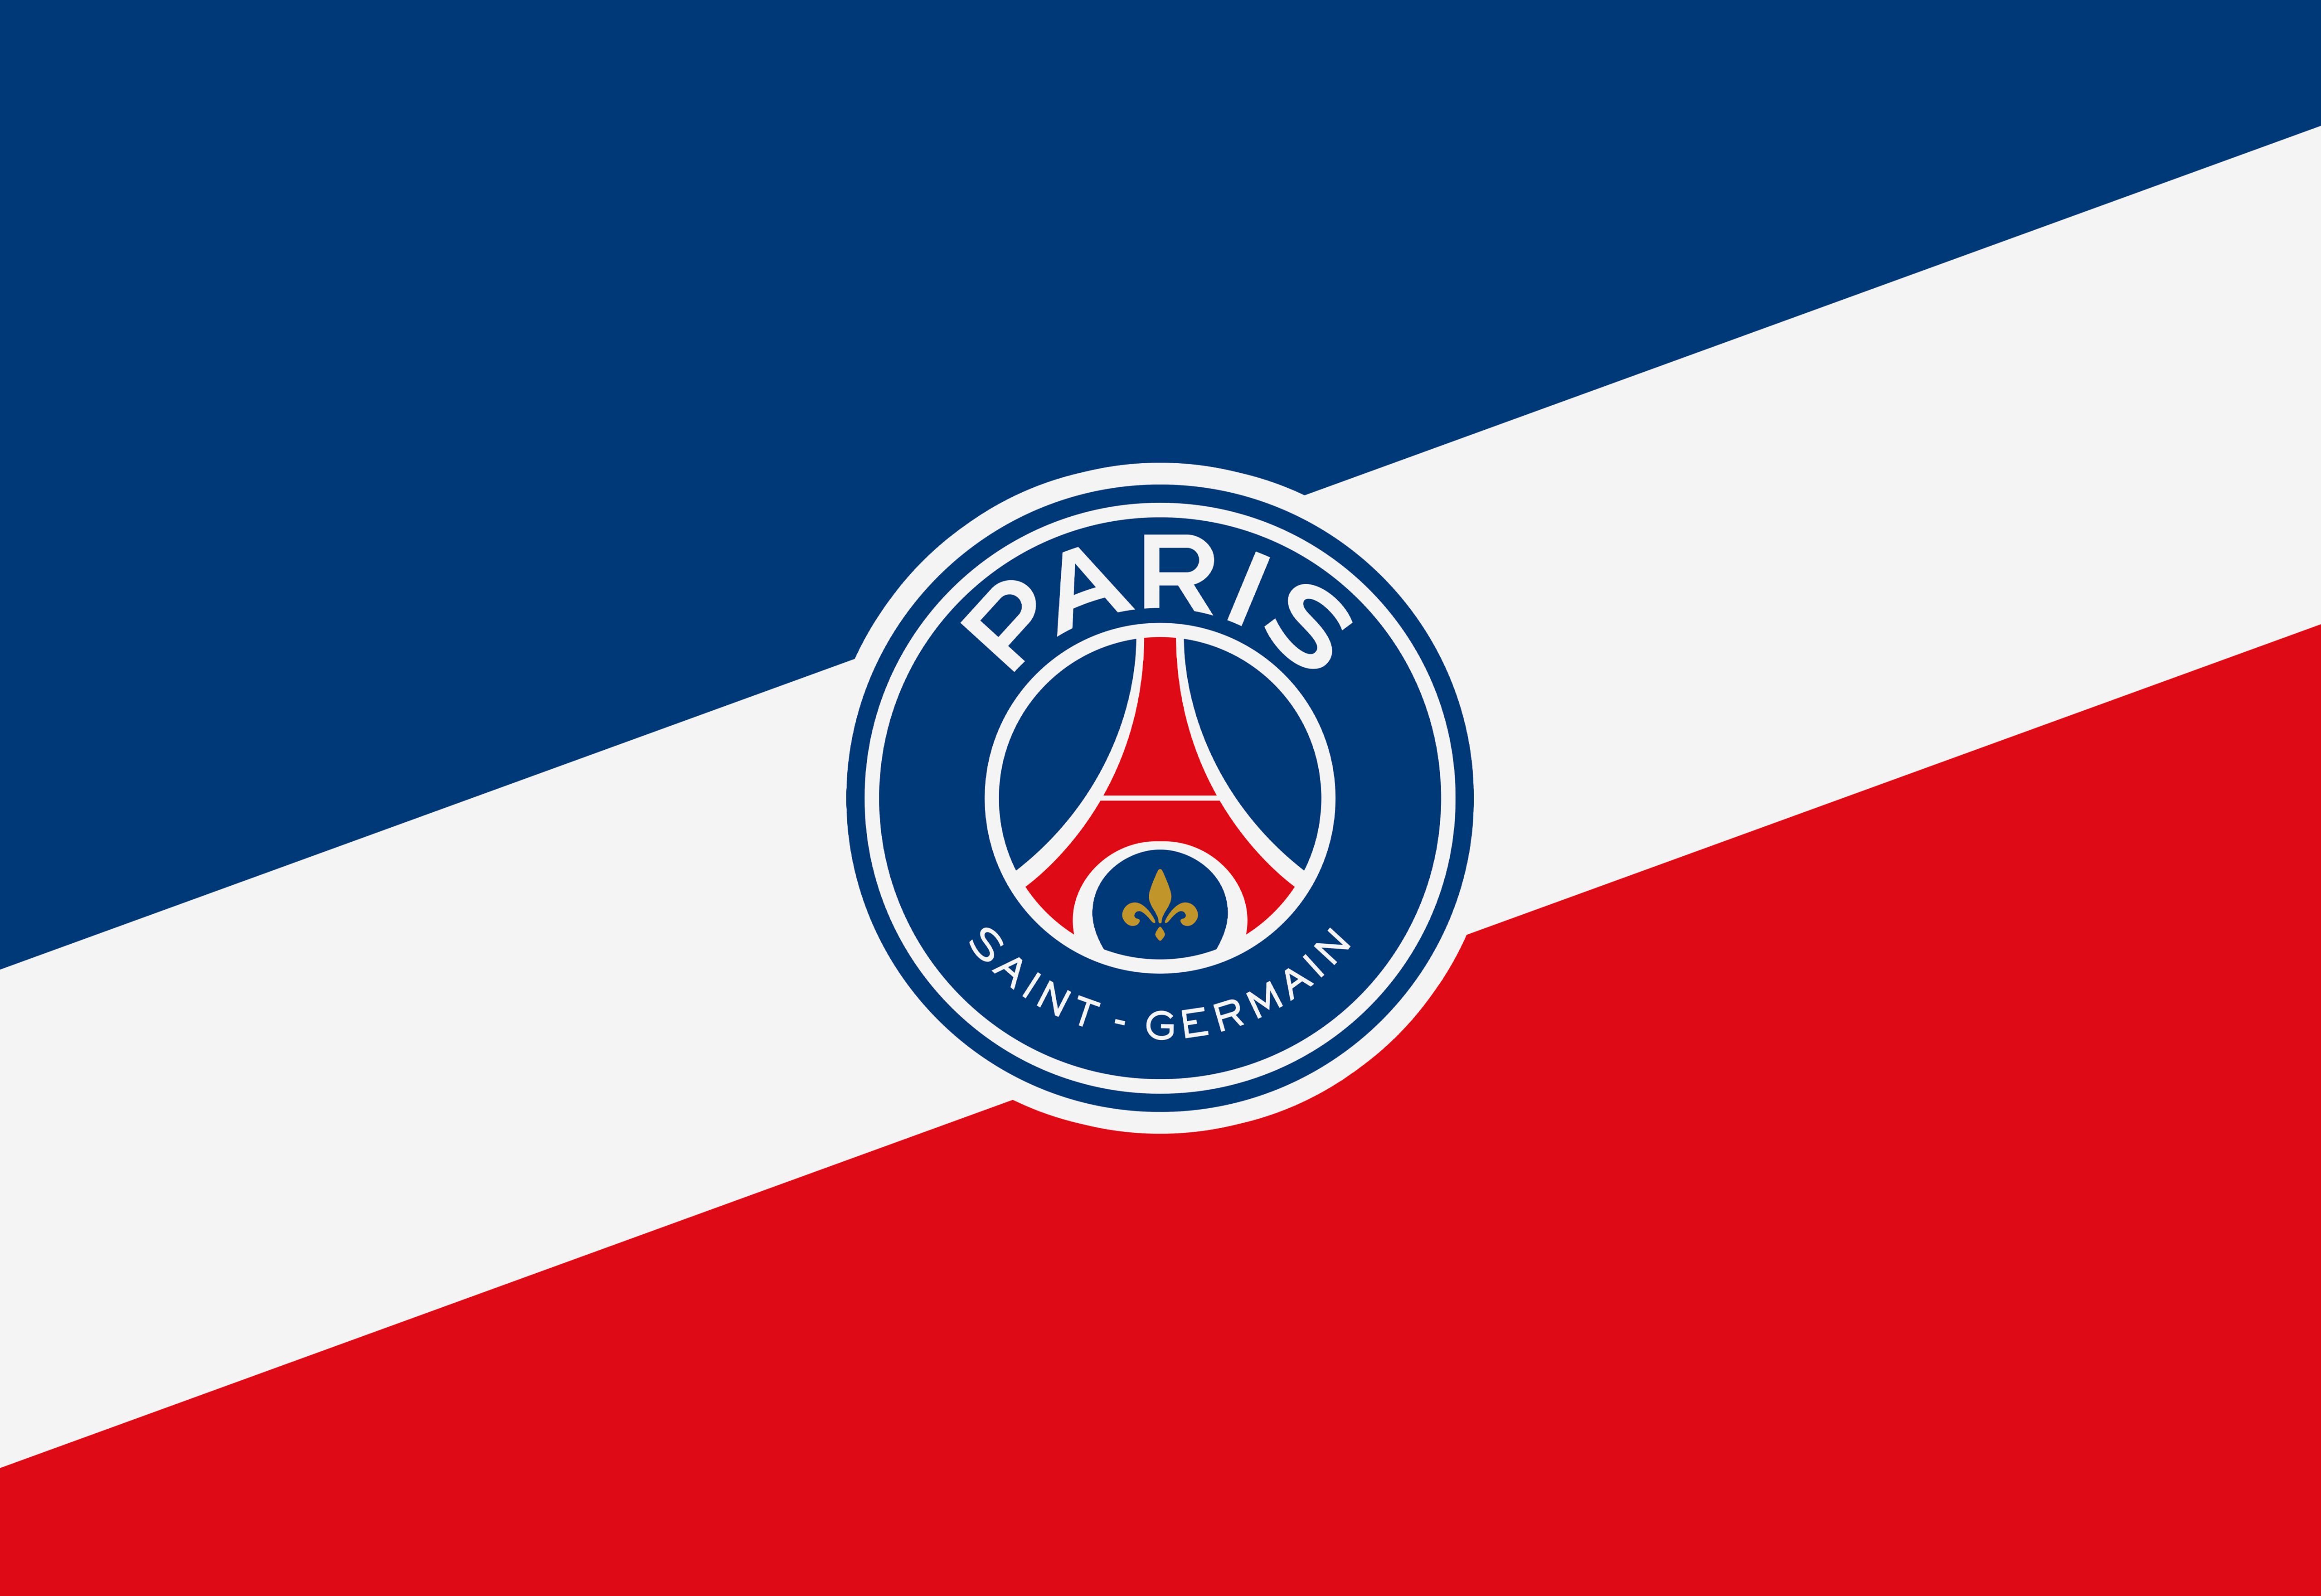 Paris Saint Germain Logo Wallpapers - Top Free Paris Saint Germain Logo ...